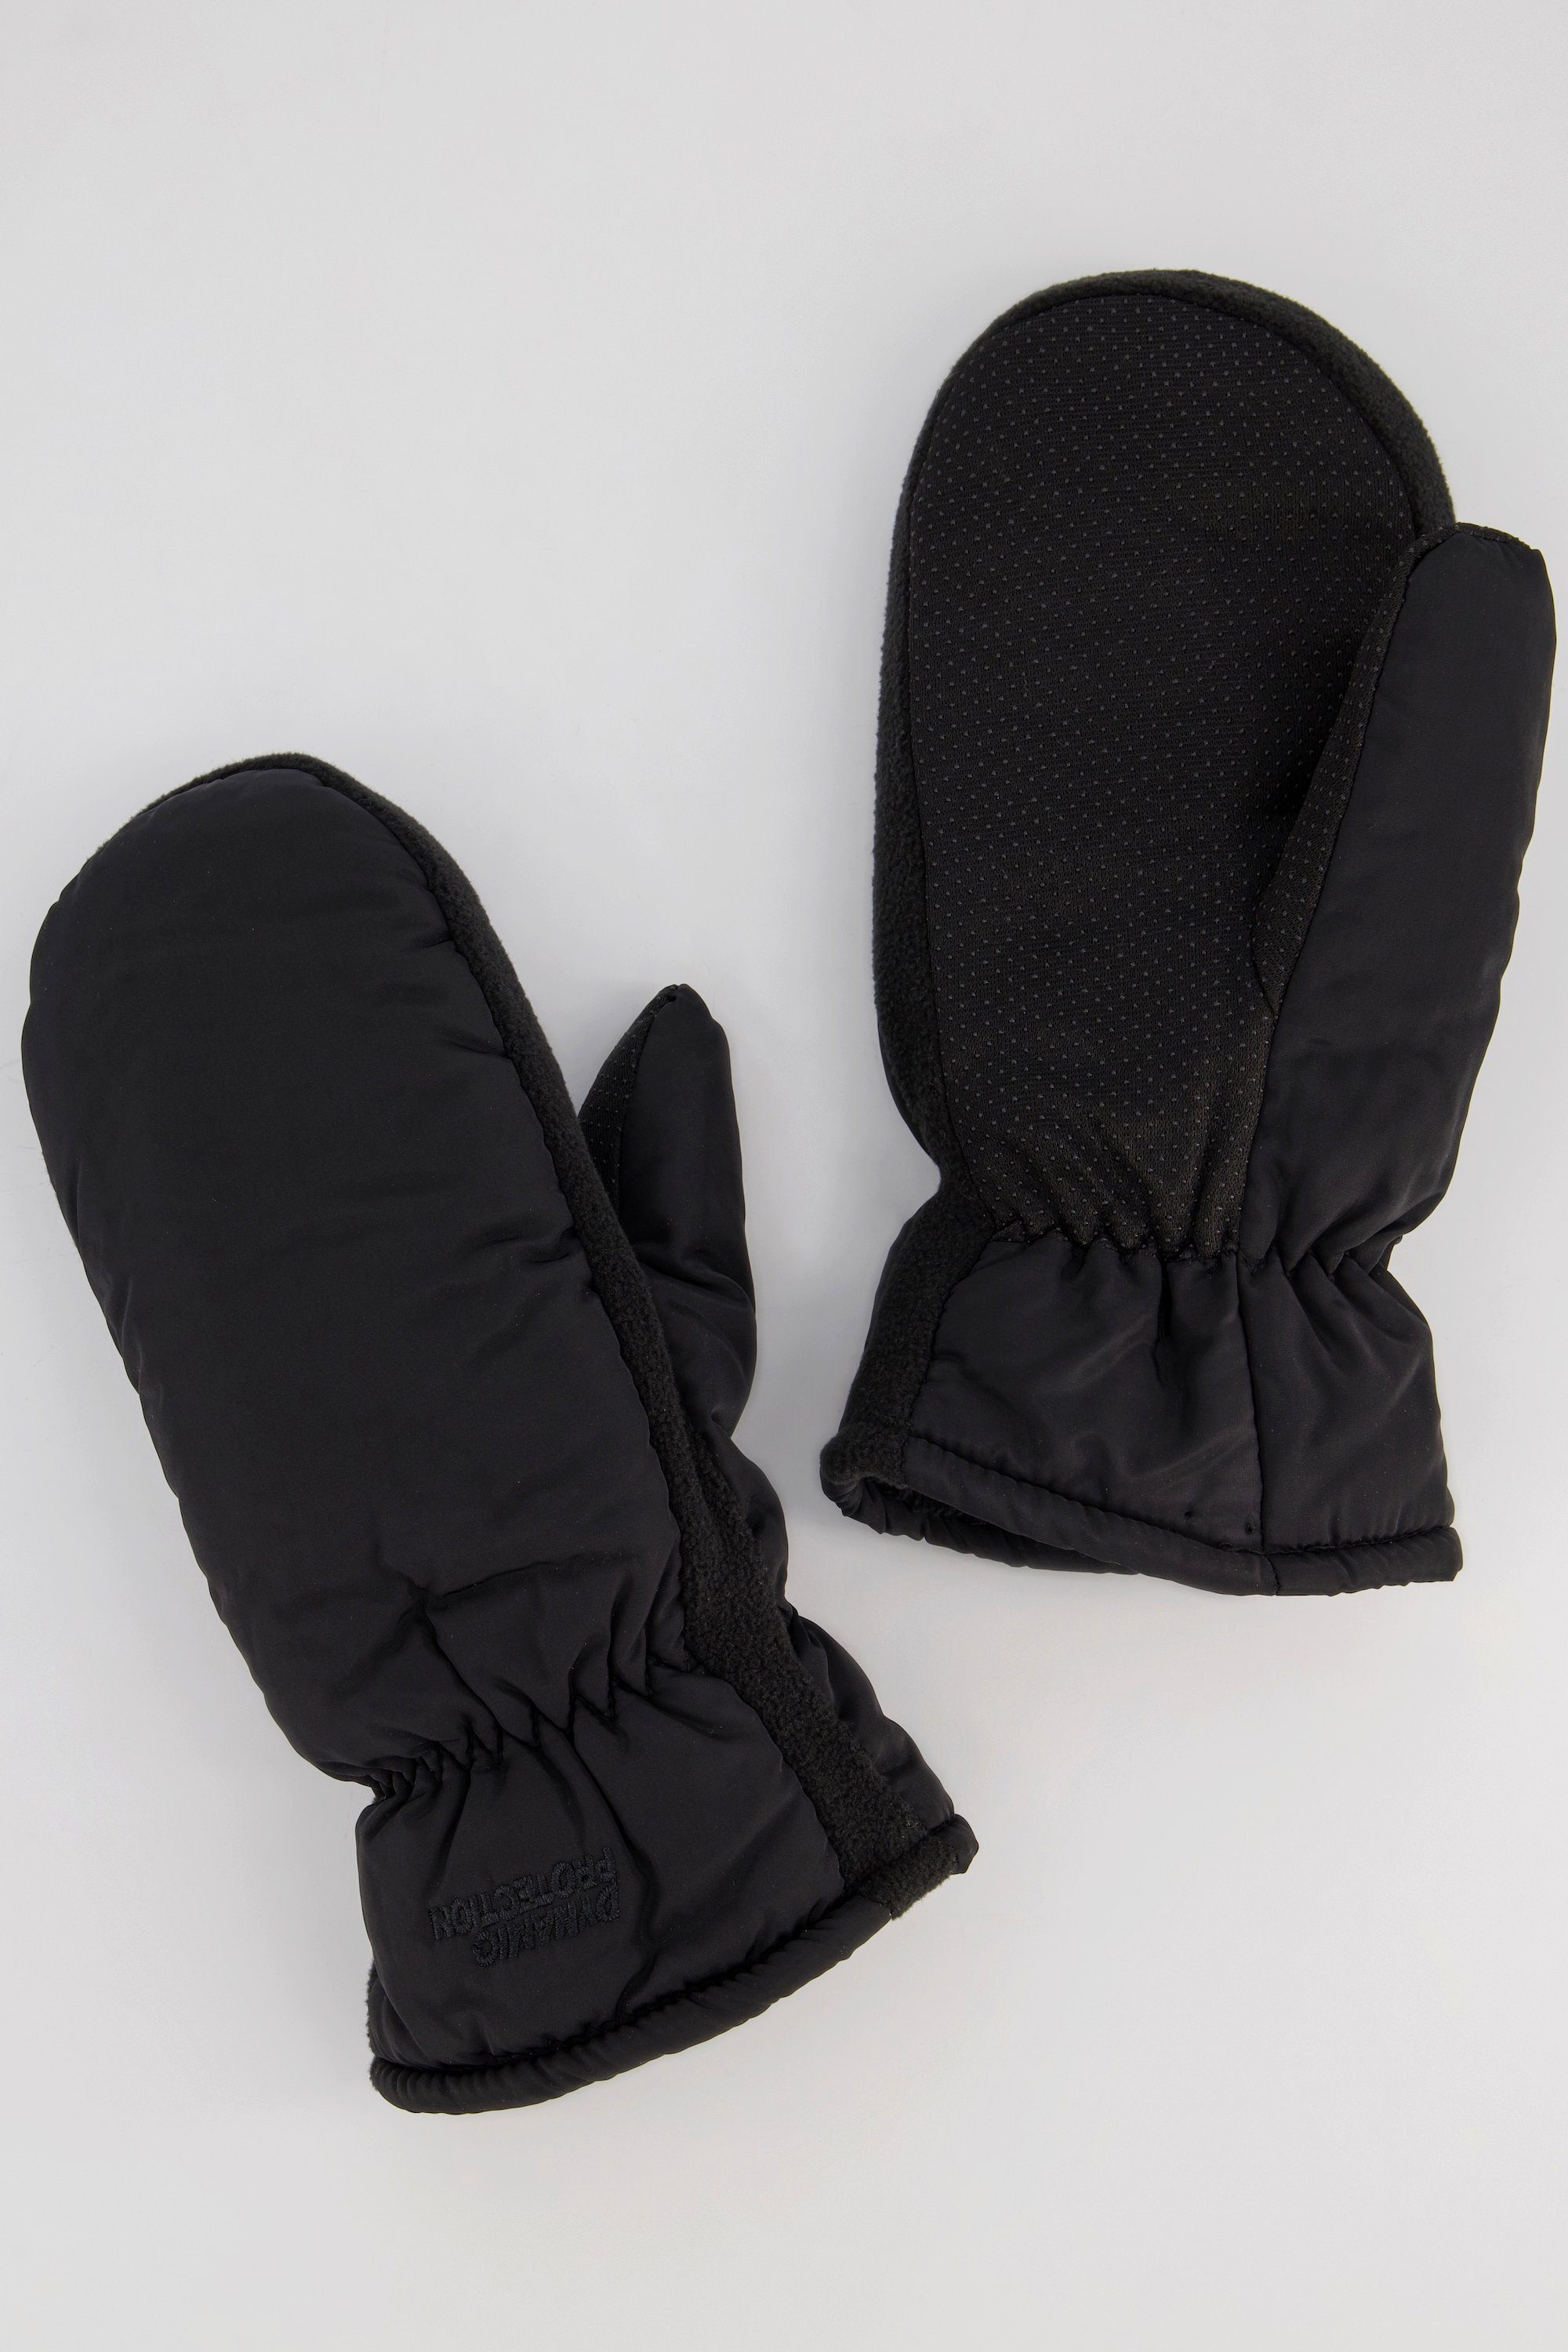 Strickhandschuhe Fäustlinge super Handschuhe warm JP1880